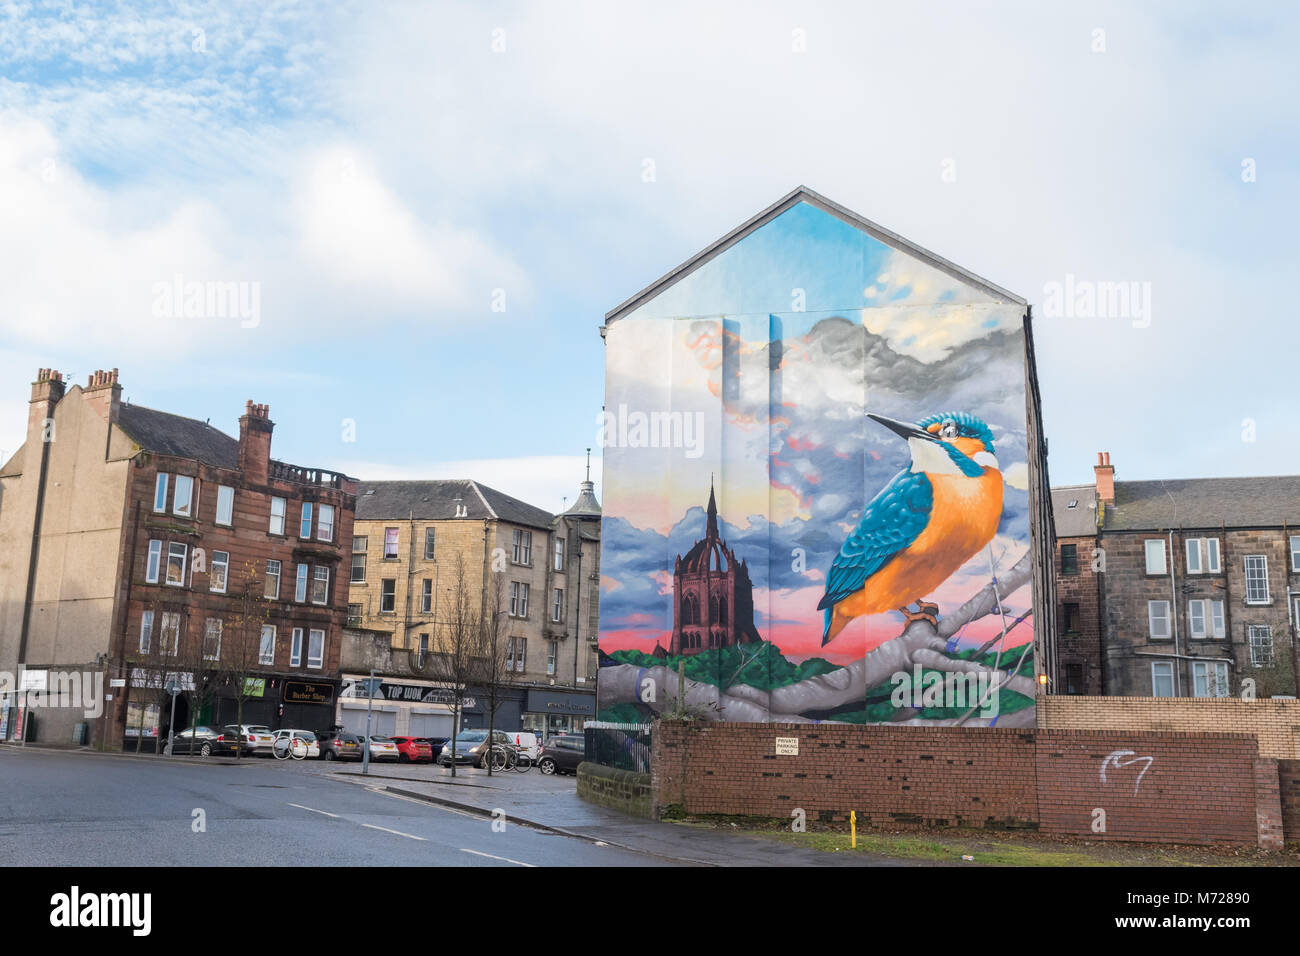 Paisley city center street scene - Incluyendo a Kingfisher mural mostrando el pasado de Paisley incluyendo ornitólogo Alexander Wilson Foto de stock